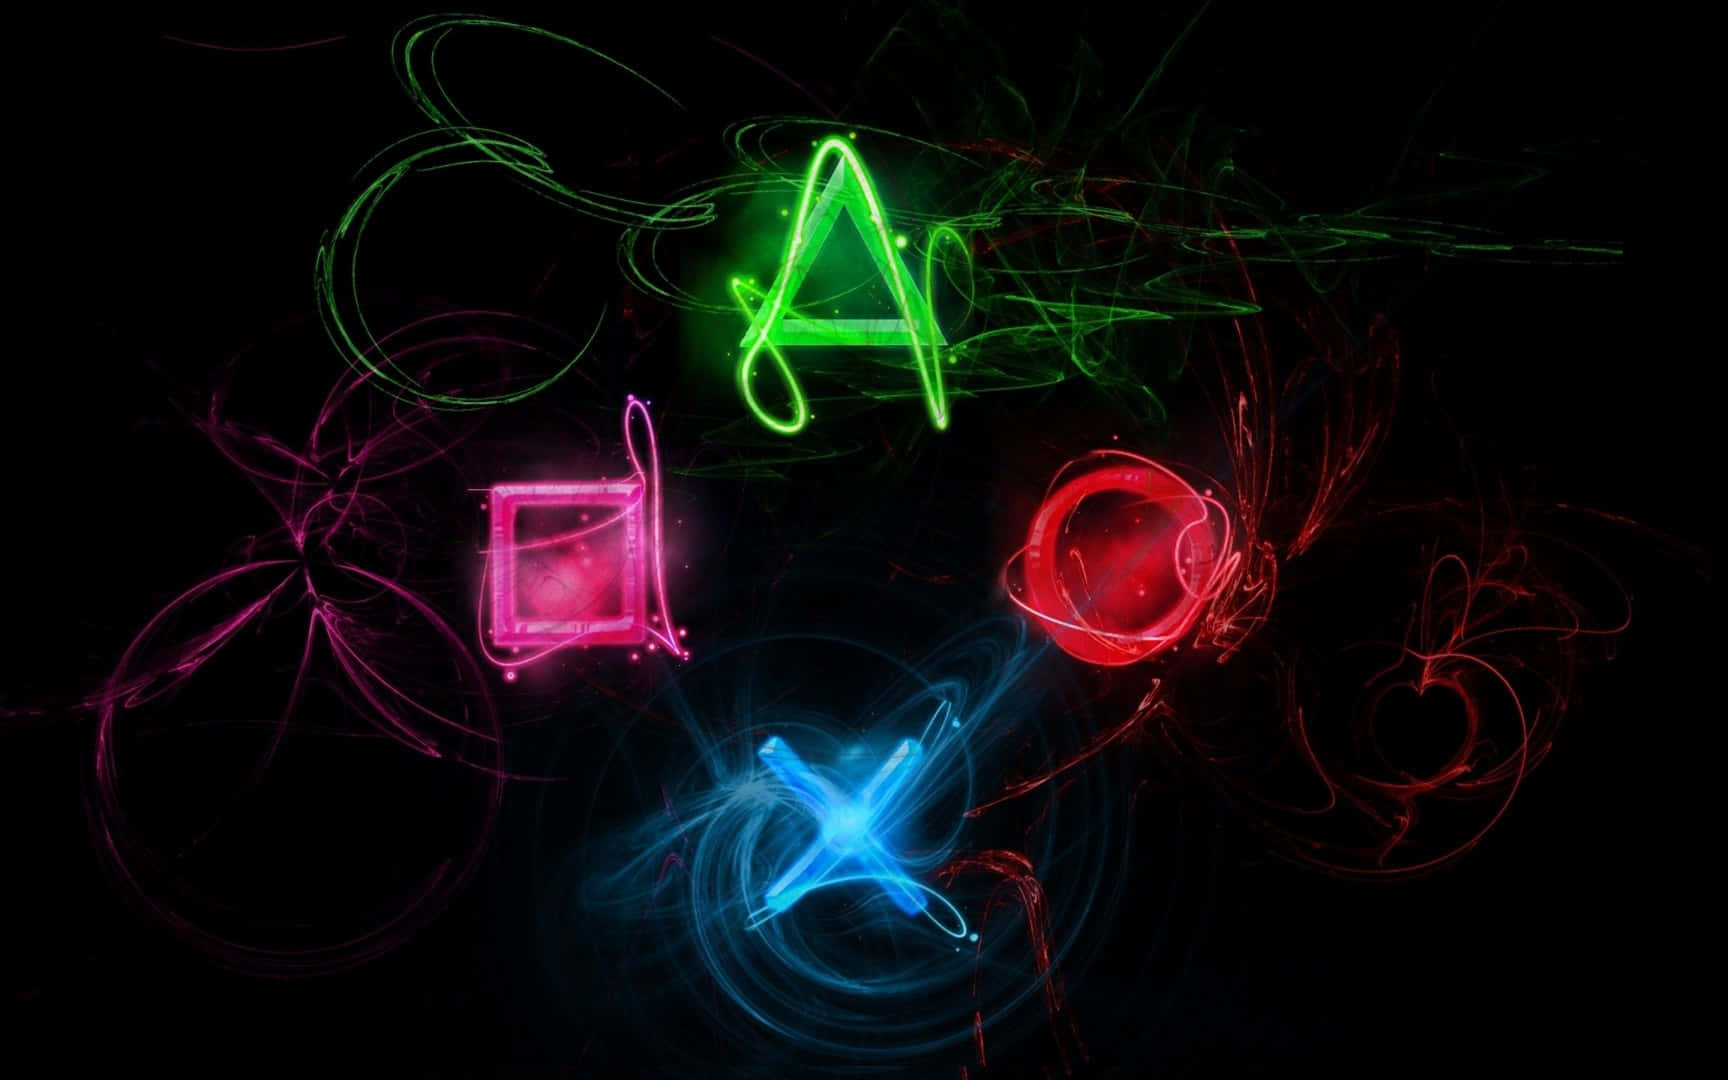 Einschwarzer Hintergrund Mit Farbenfrohem Rauch Und Playstation-symbolen. Wallpaper